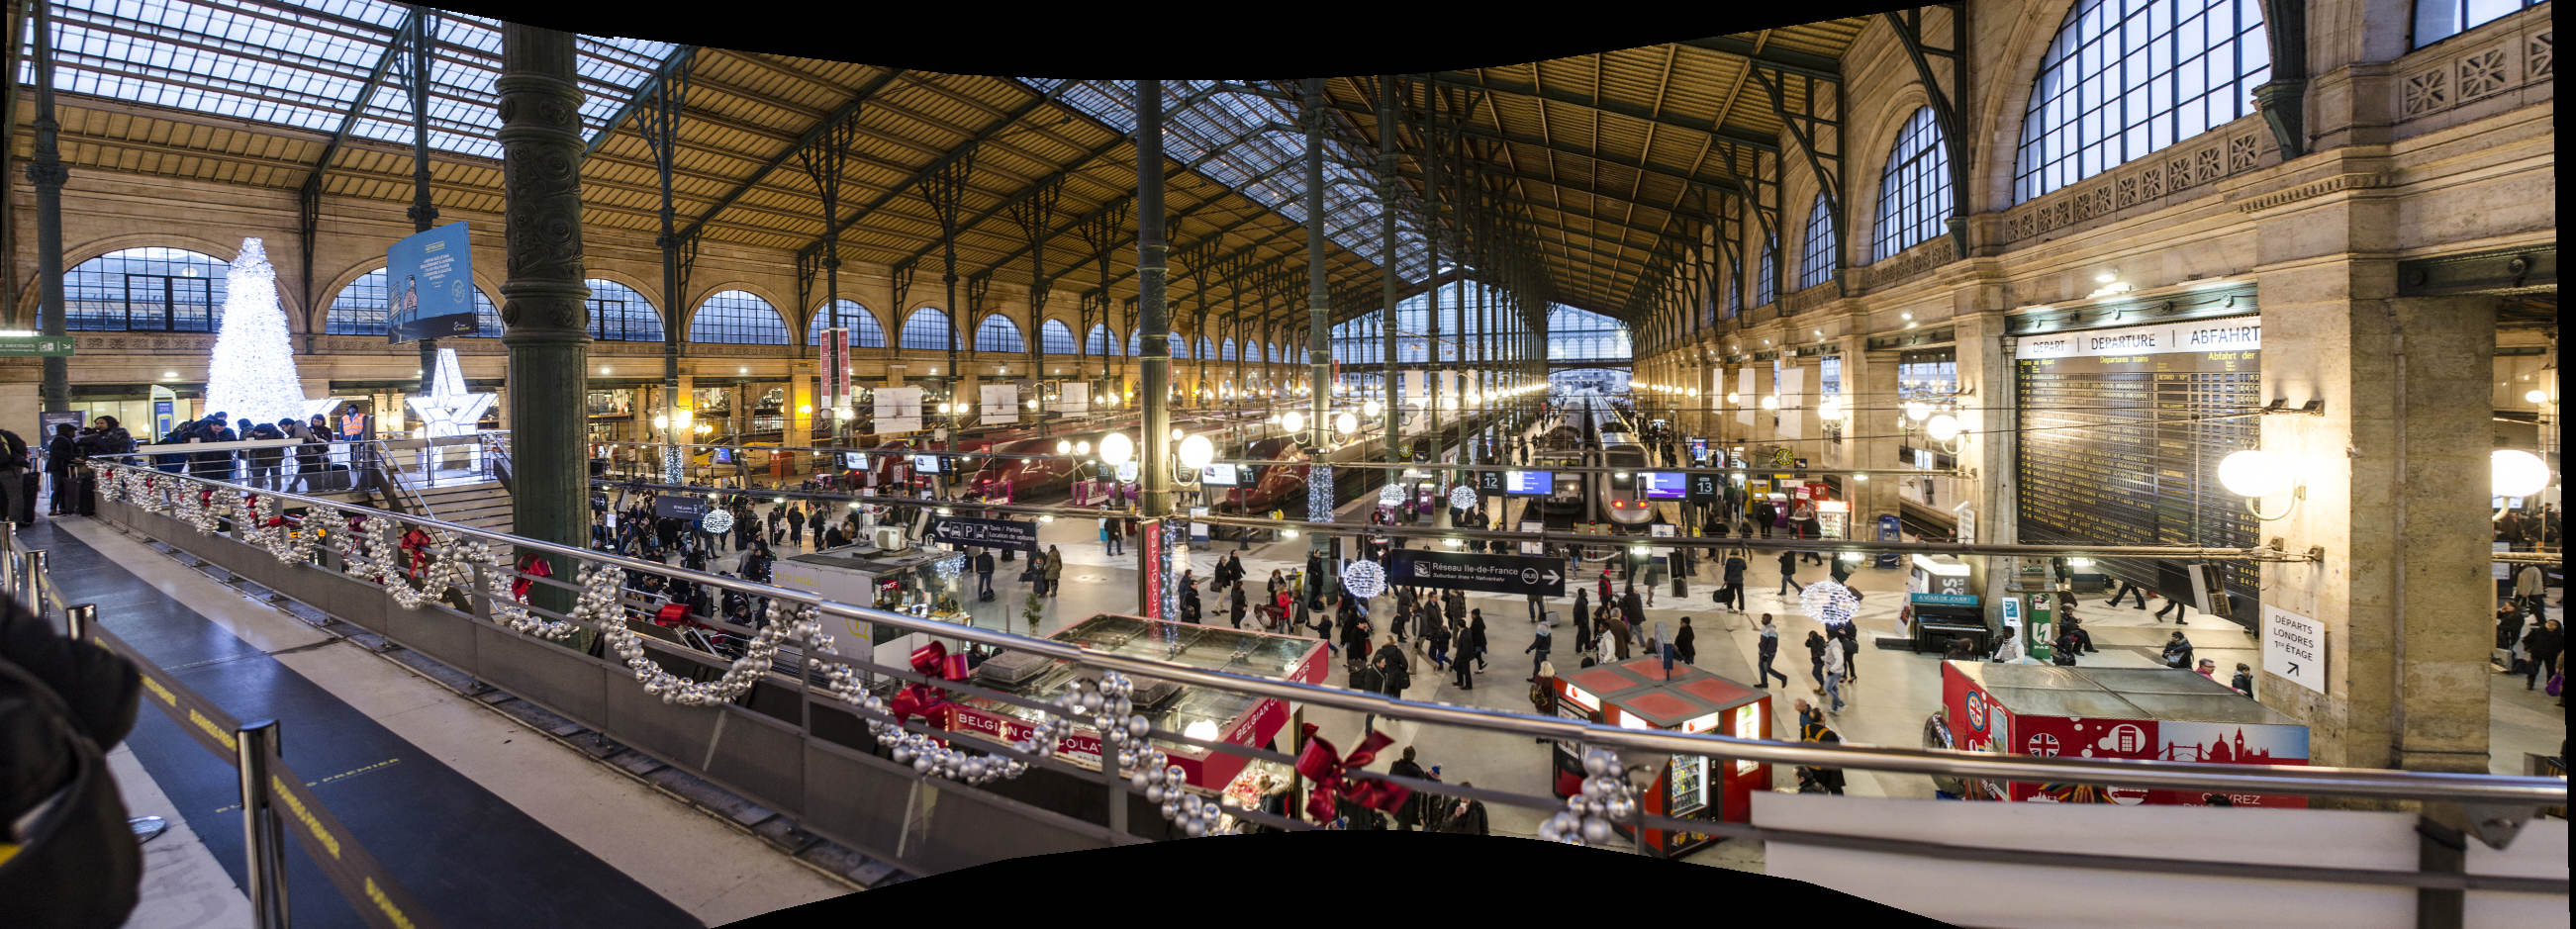 Железная дорога париж вена. Gare du Nord Париж. Лионский вокзал в Париже. Вокзал гар дю Норд Брюссель. Paris Nord вокзал.